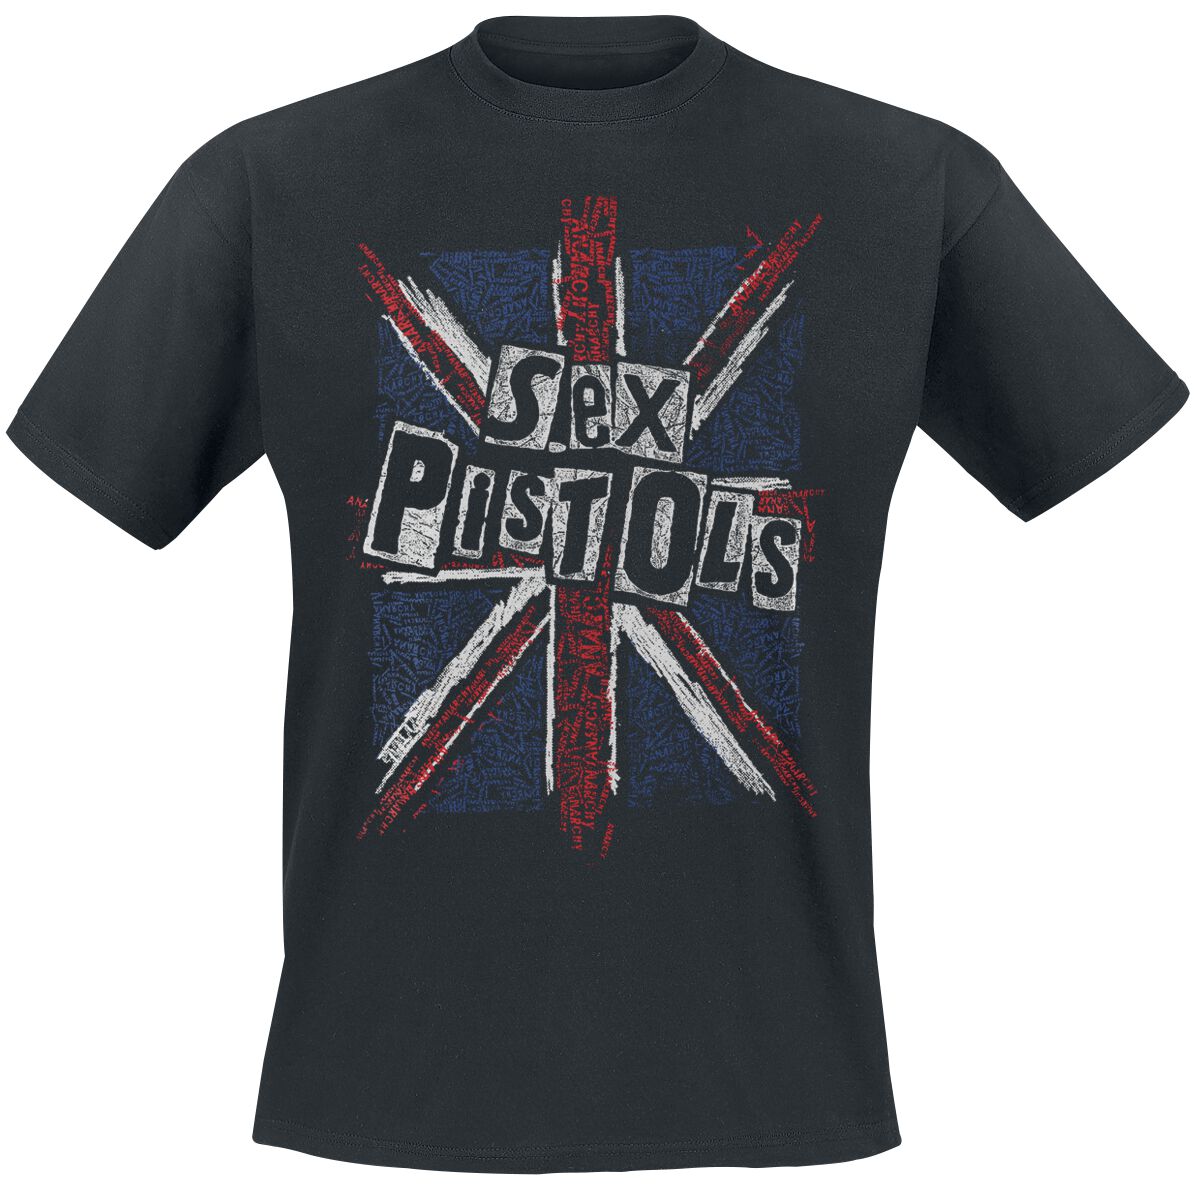 Sex Pistols T-Shirt - Union Jack - M bis XXL - für Männer - Größe M - schwarz  - Lizenziertes Merchandise!